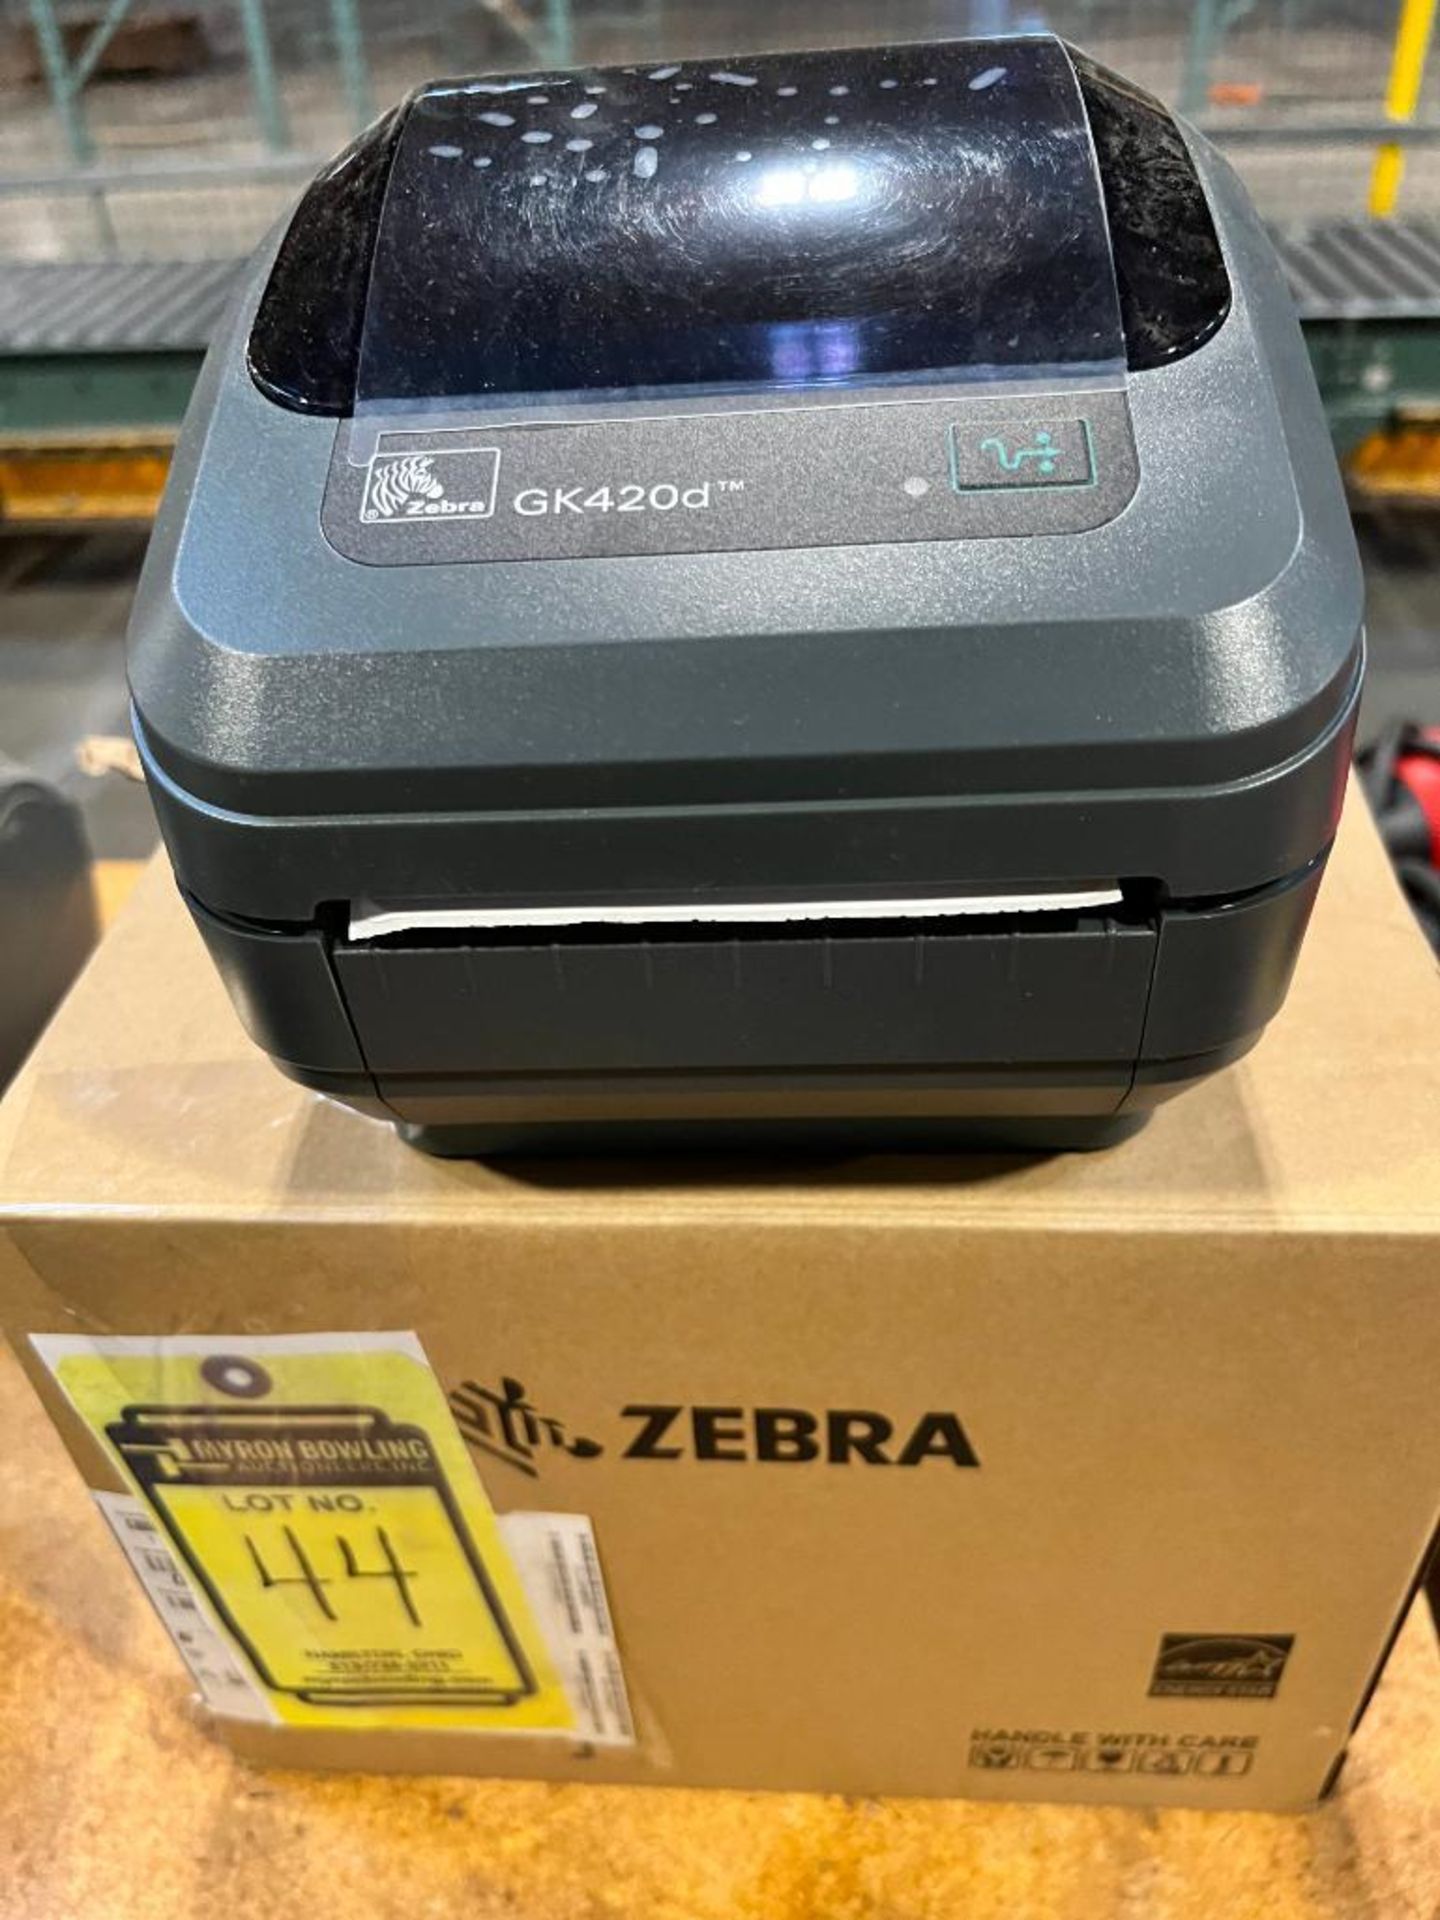 (New) Zebra Printer Model GK42OD